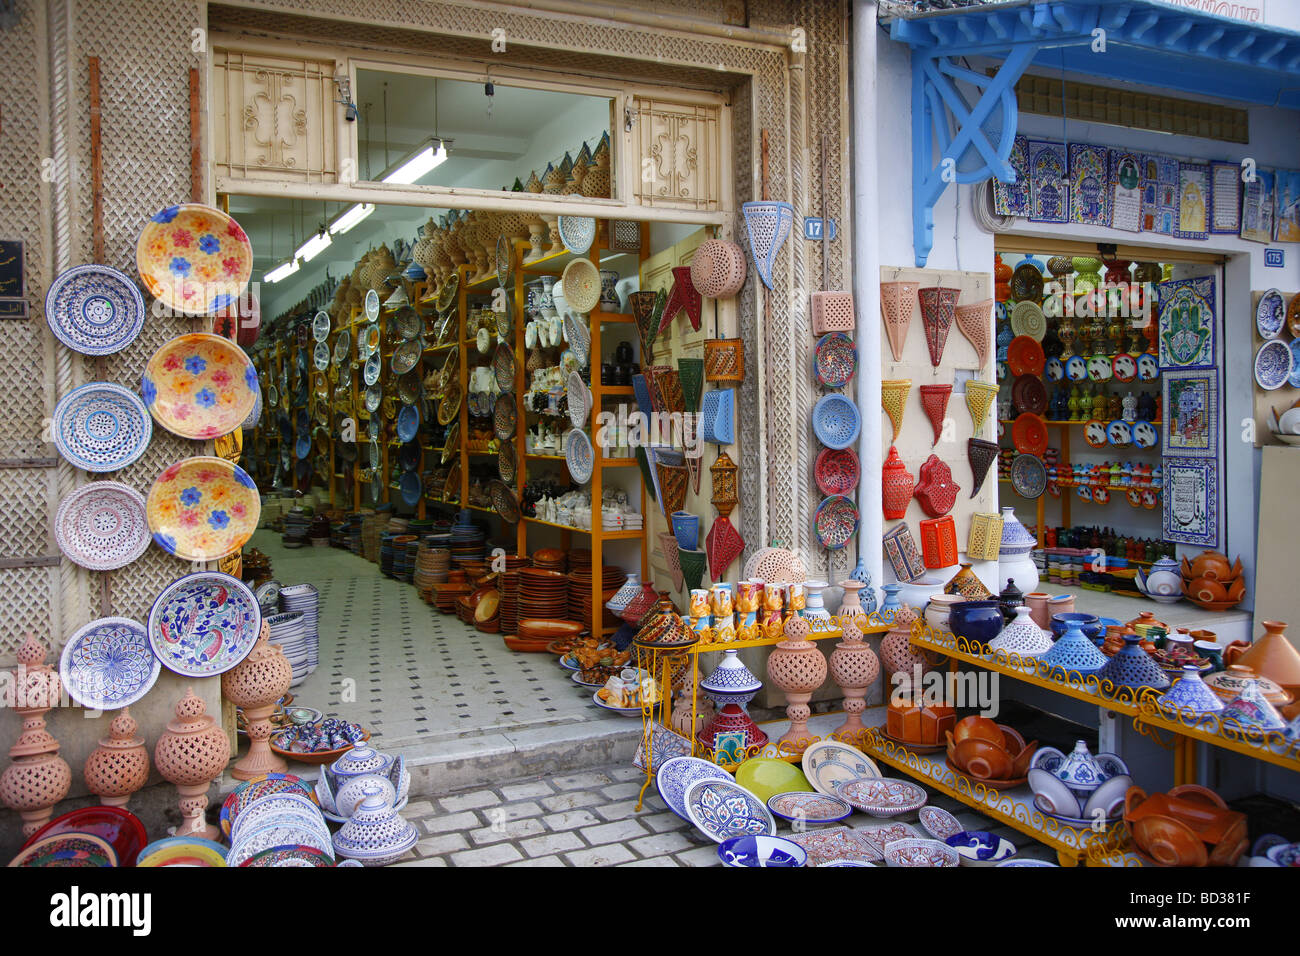 Negozi di souvenir e ceramiche araba, Hammamet, Tunisia, Africa Settentrionale Foto Stock